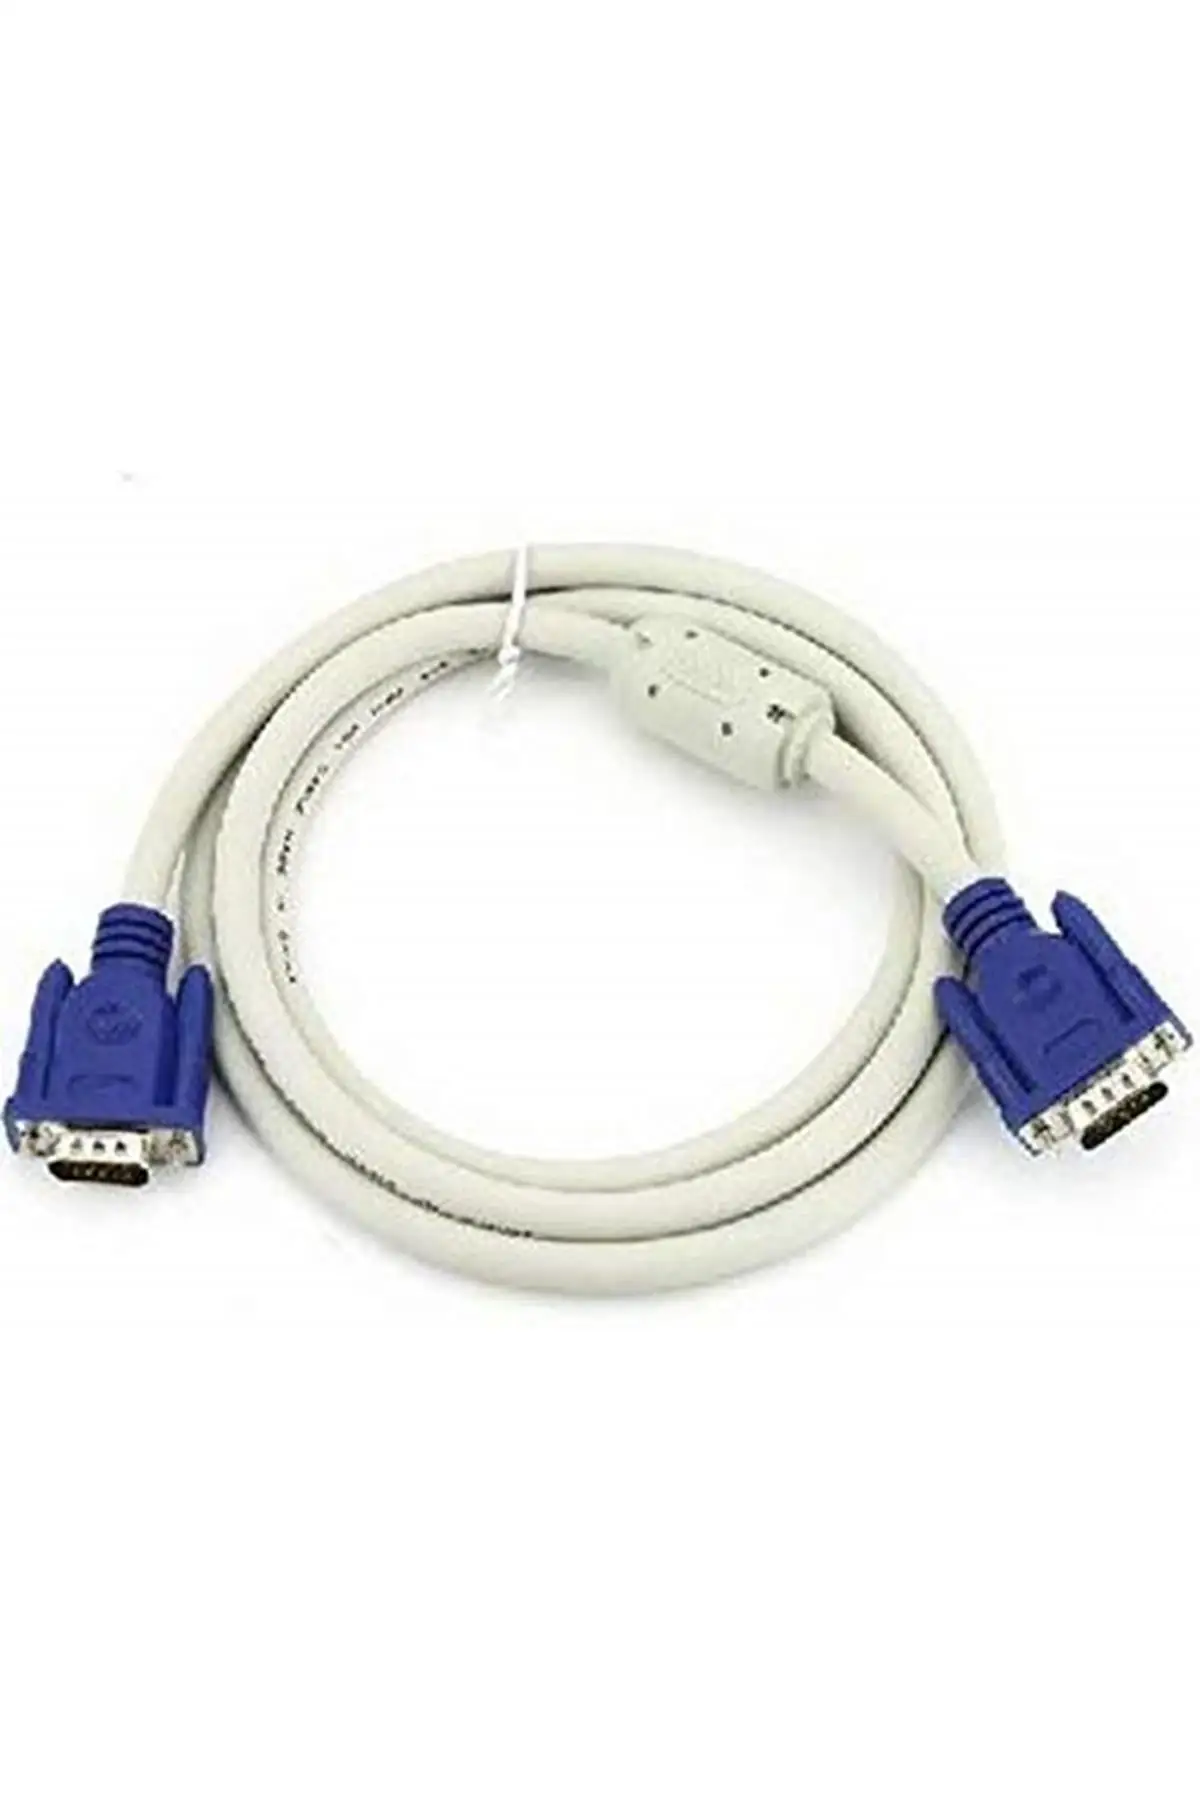 

Бренд: Derkab, сетевой Ethernet-Кабель Cat6 длиной 7 метров, красный, Категория: сетевой кабель